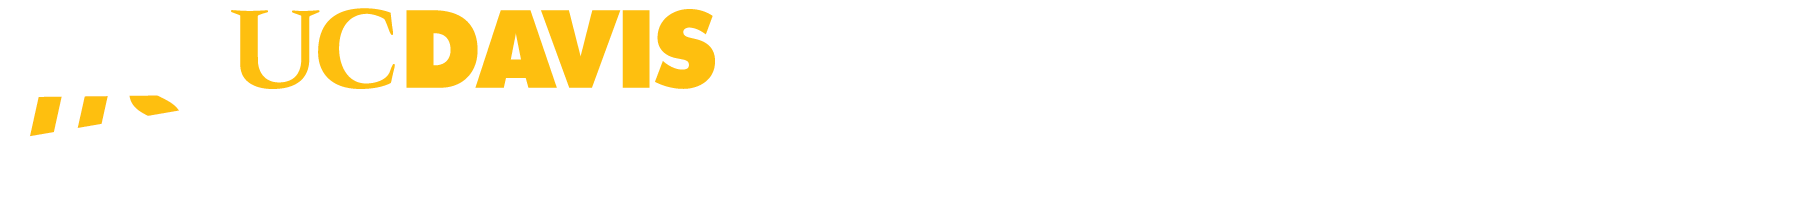 ITS Logo designed for dark backgrounds